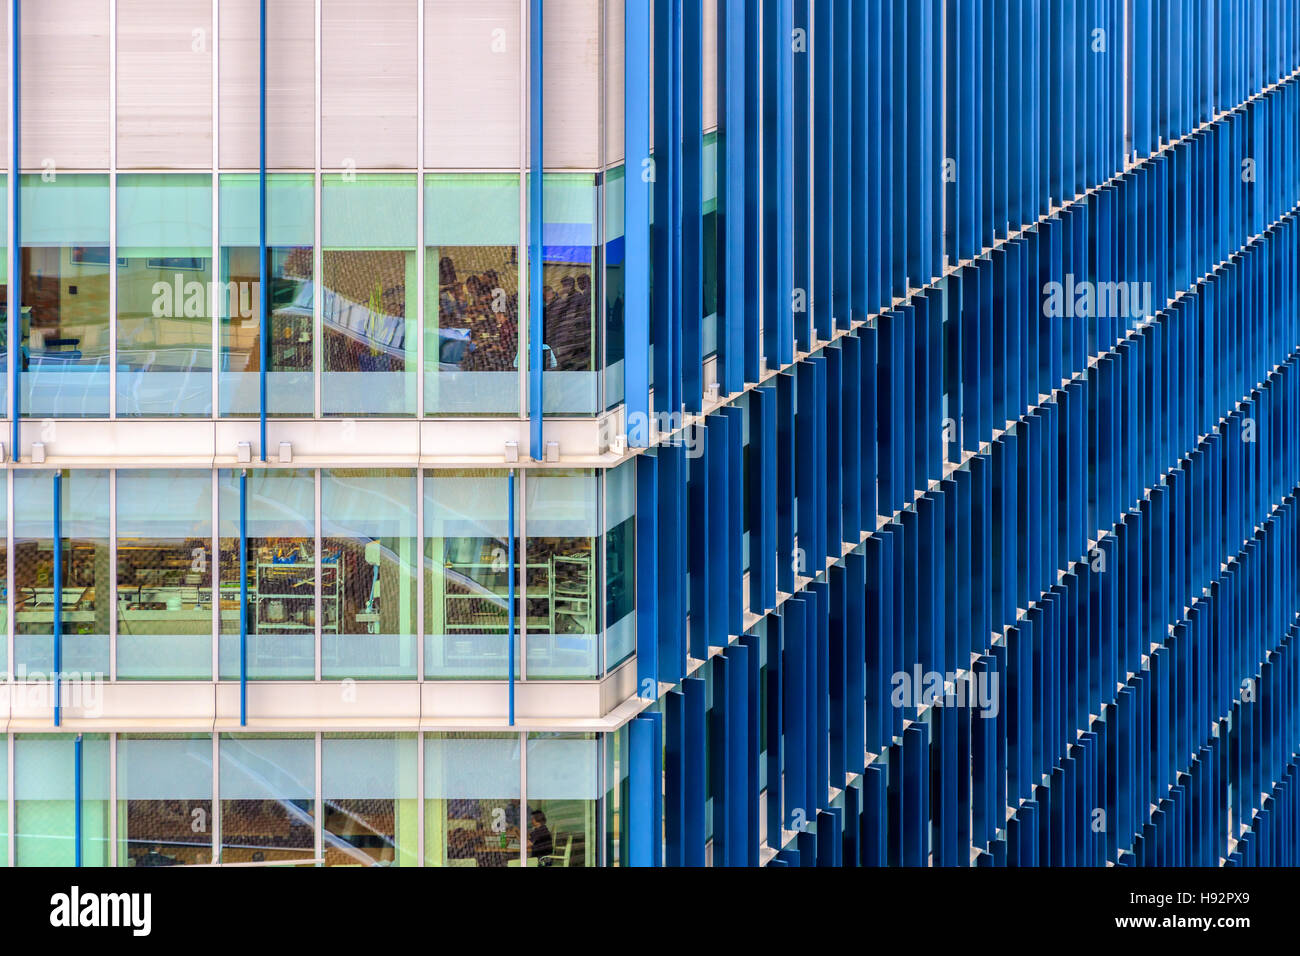 Immeuble de bureaux modernes avec motif blue fin Banque D'Images